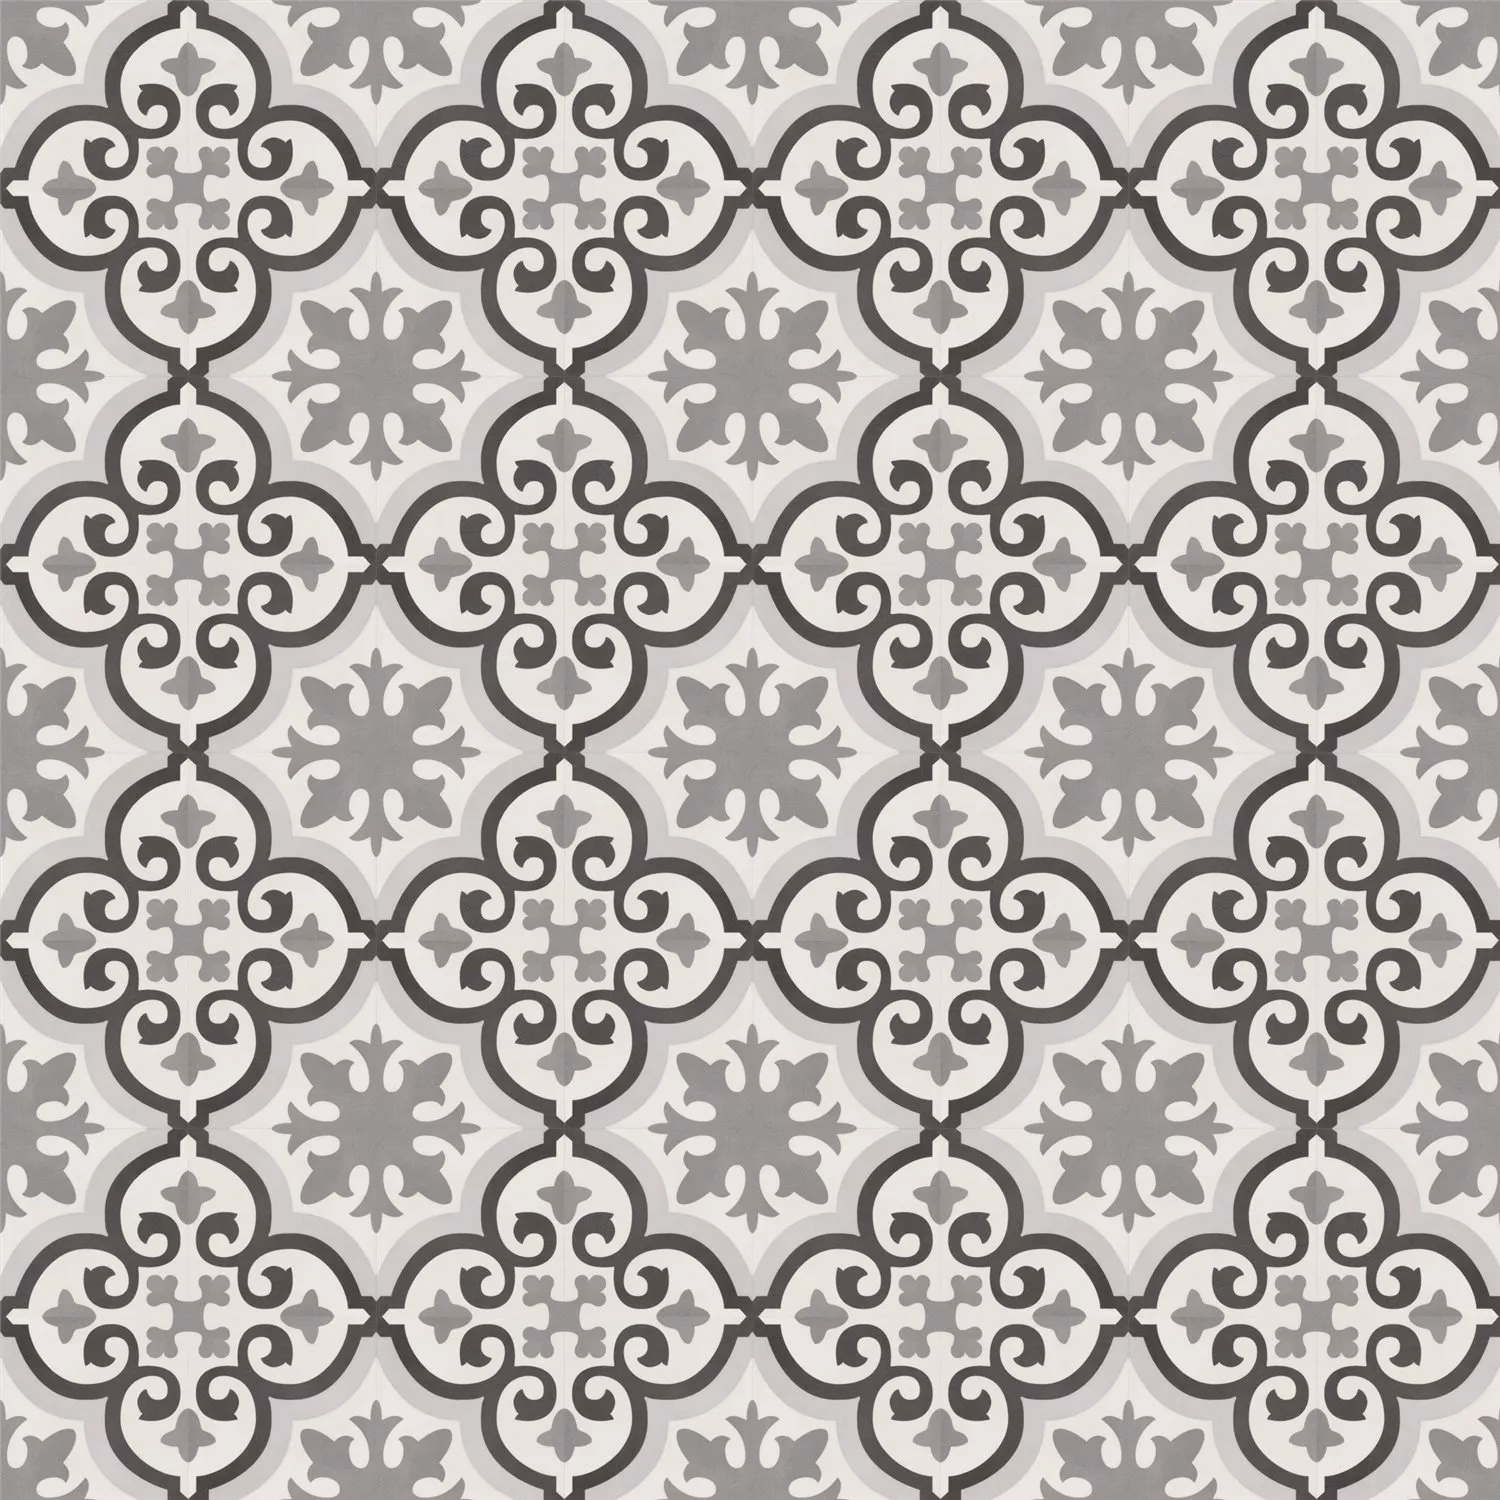 Cement Tiles Optic Arena Floor Tiles Chalet 18,6x18,6cm